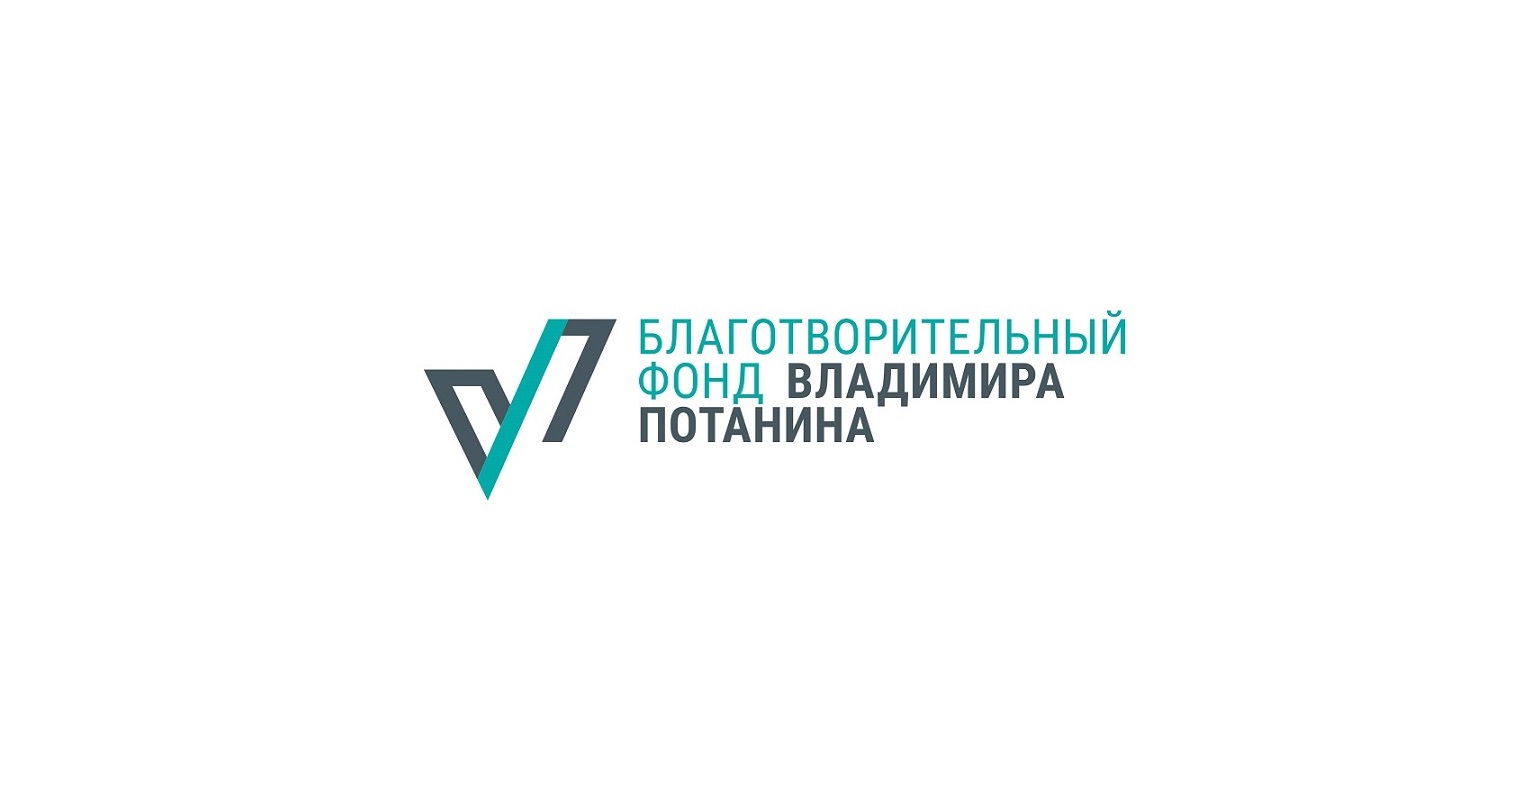 До 31 августа открыт прием заявок на 4 конкурса от Благотворительного Фонда Владимира Потанина